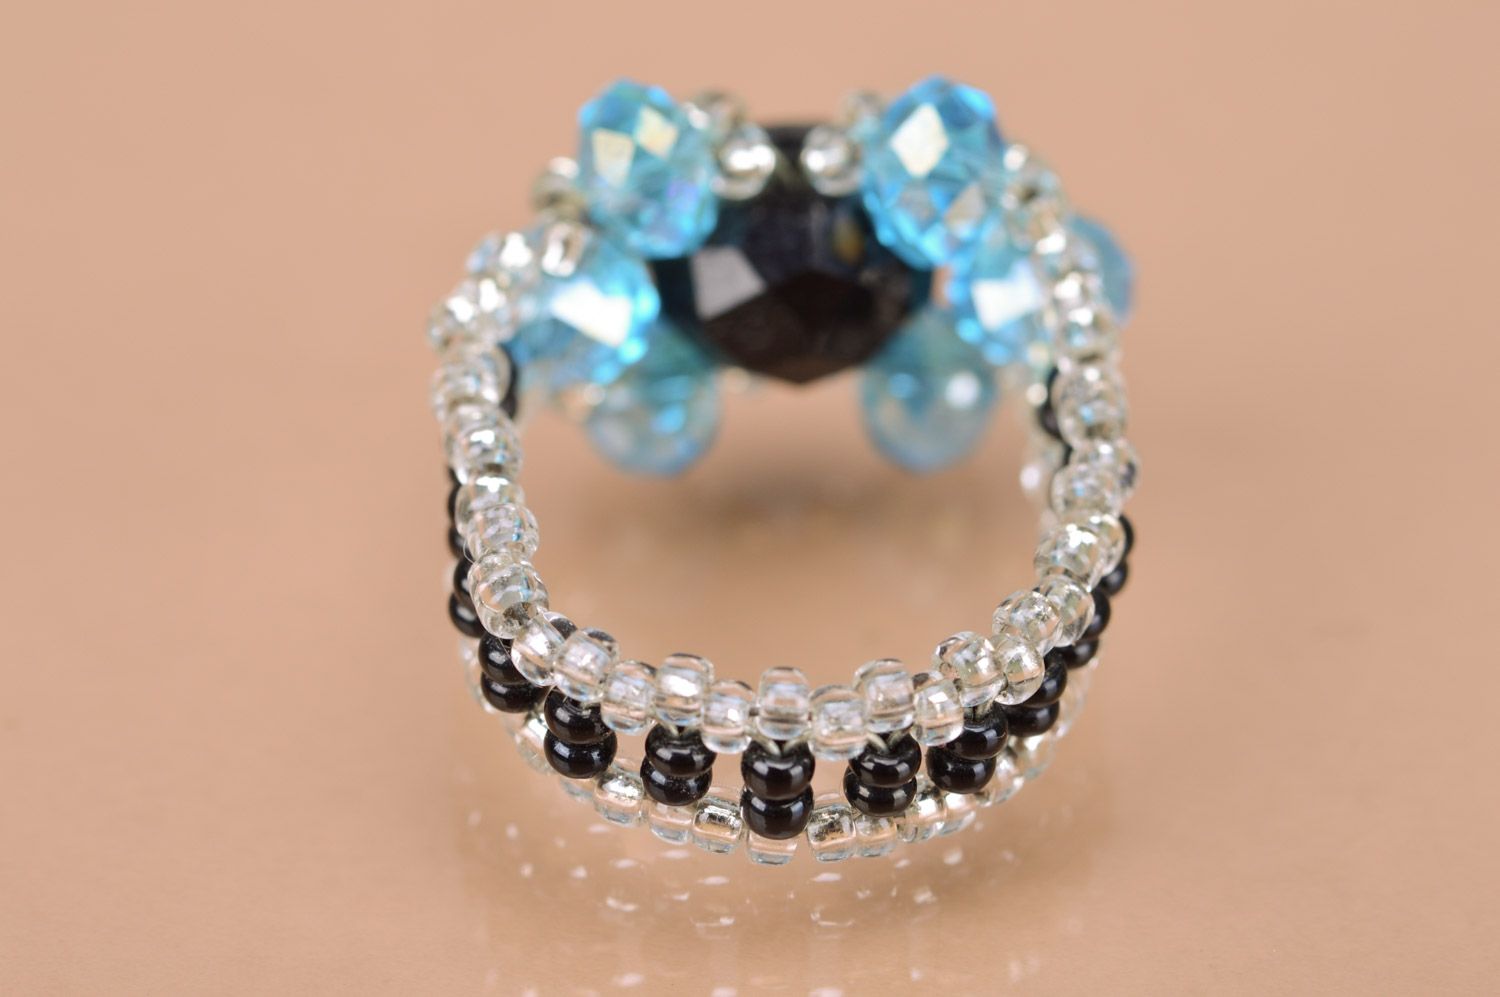 Бисерное кольцо ручной работы голубое с черной бусиной красивое элегантное фото 2